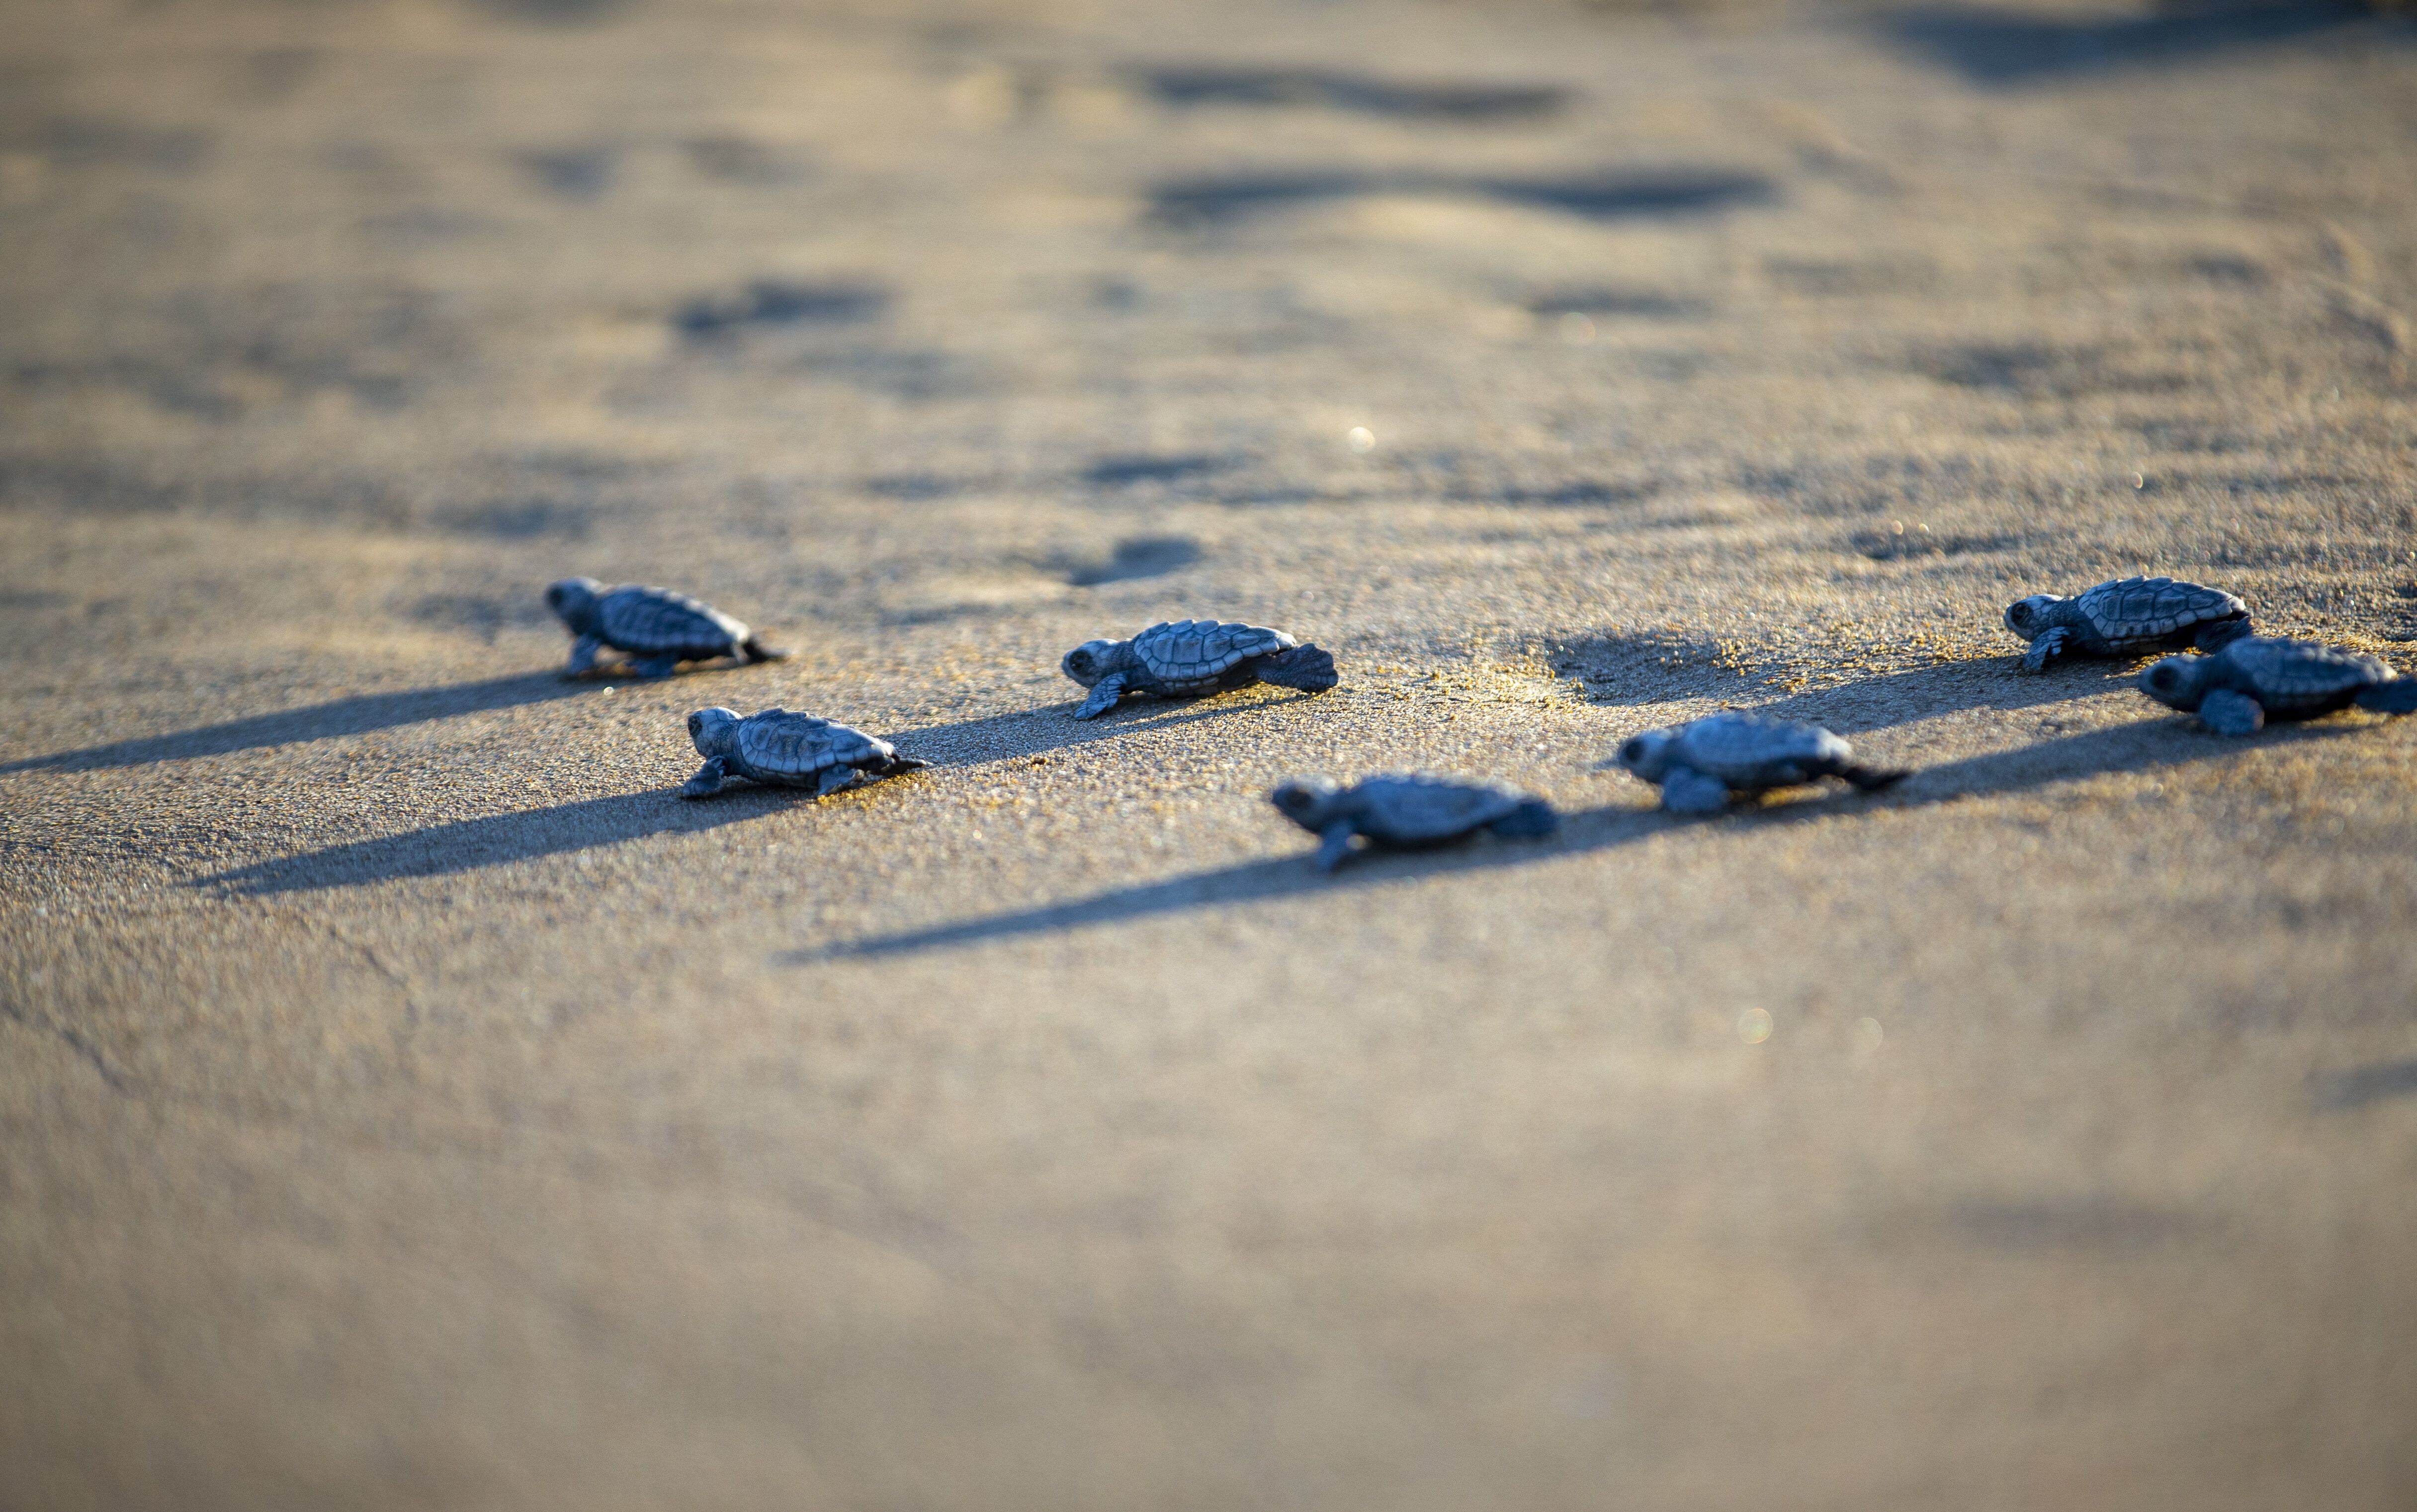 Un nid de Caretta Caretta peut compter jusqu'à 90 tortues. (Photo